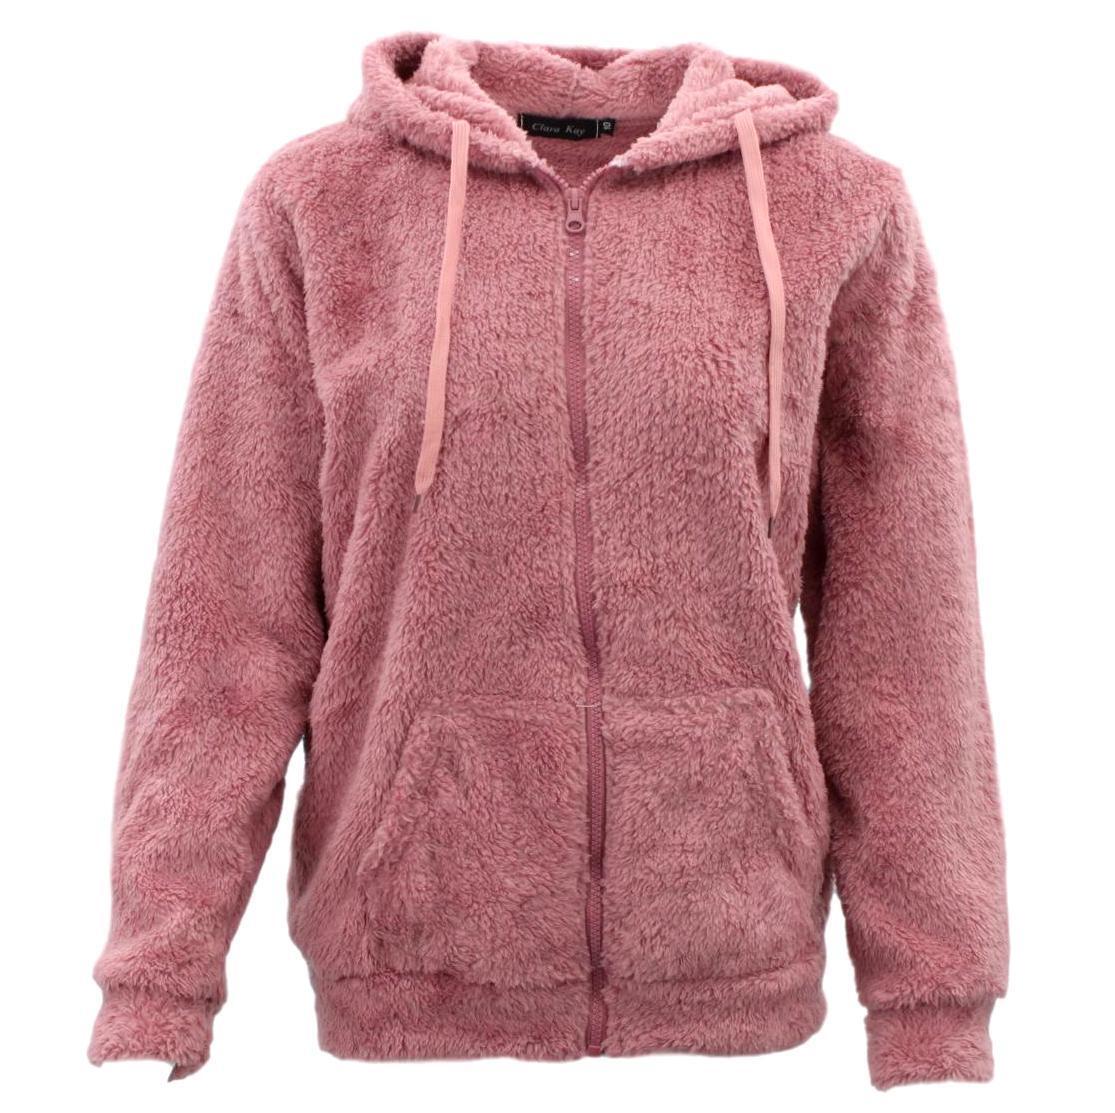 FIL Women's Teddy Fur Jacket Fleece Hoodie Zip Up Soft Winter Sherpa Fluffy Coat | eBay